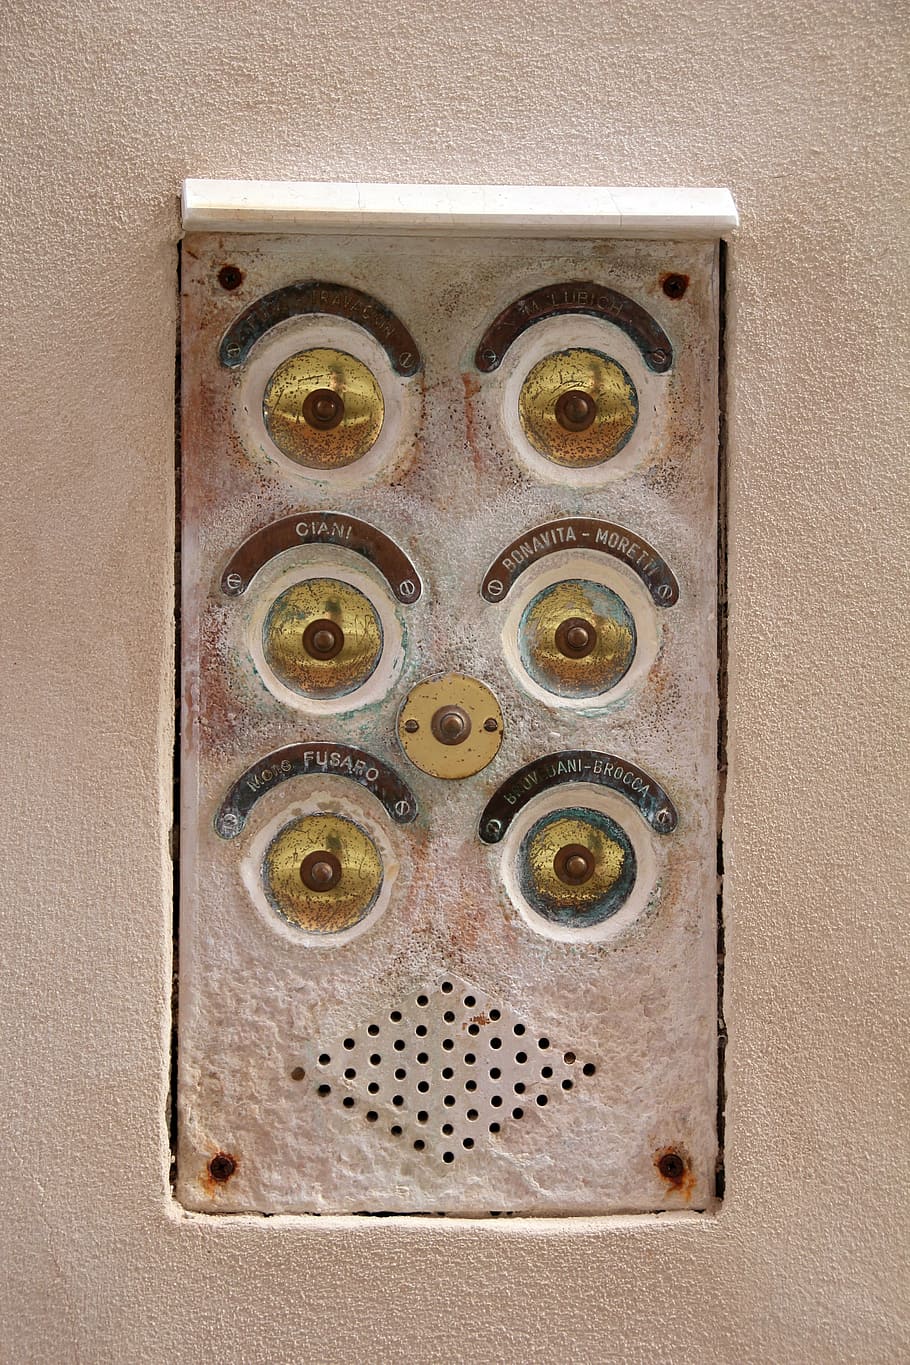 bell, house entrance, doorbell, shiny, klingelingeling, door bell, intercom, close-up, metal, control